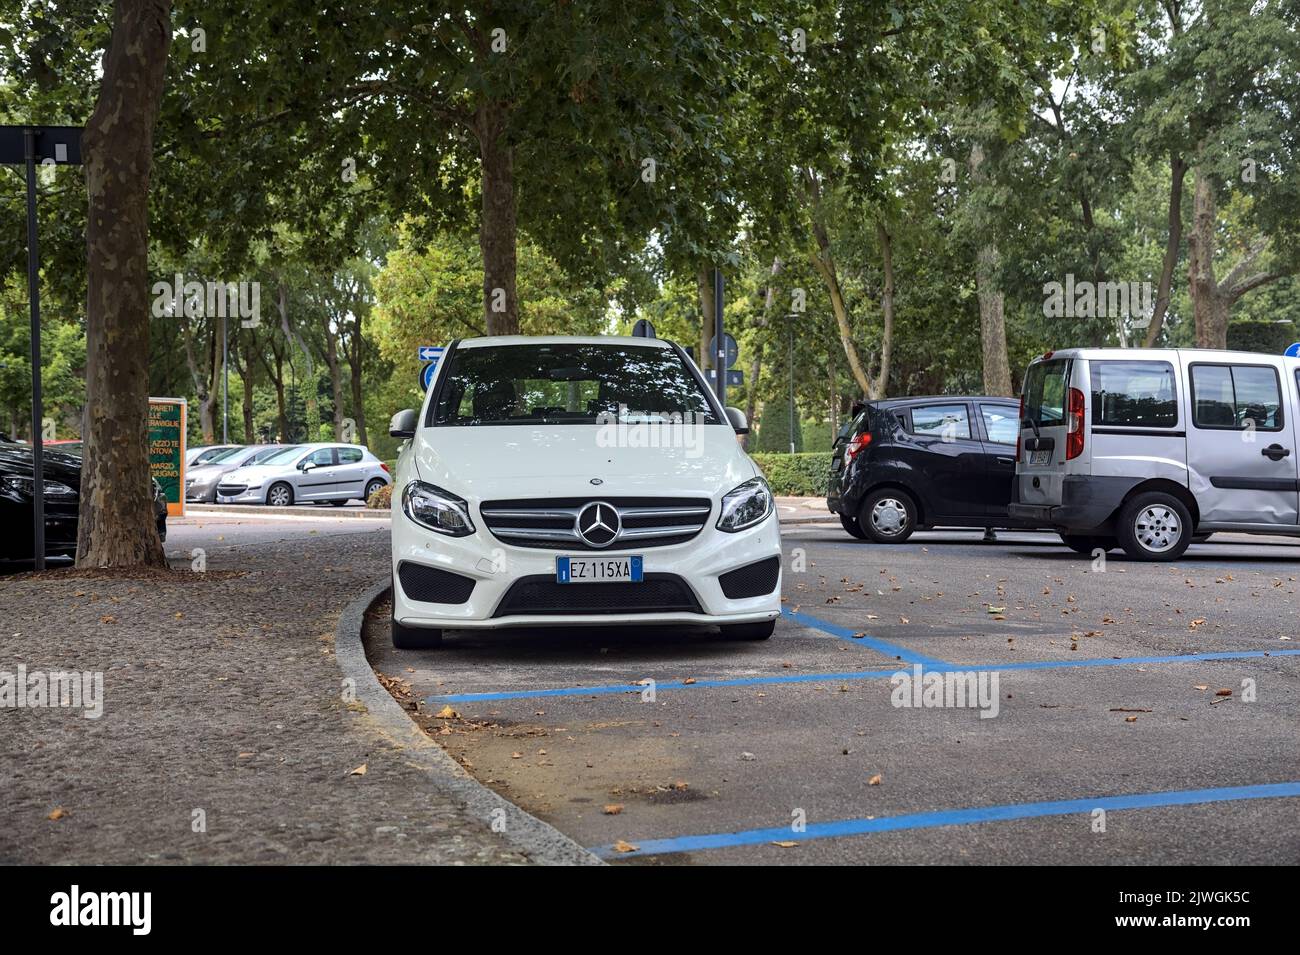 Weißer Mercedes Benz C180 auf einem öffentlichen Parkplatz neben einem Park an einem bewölkten Tag Stockfoto